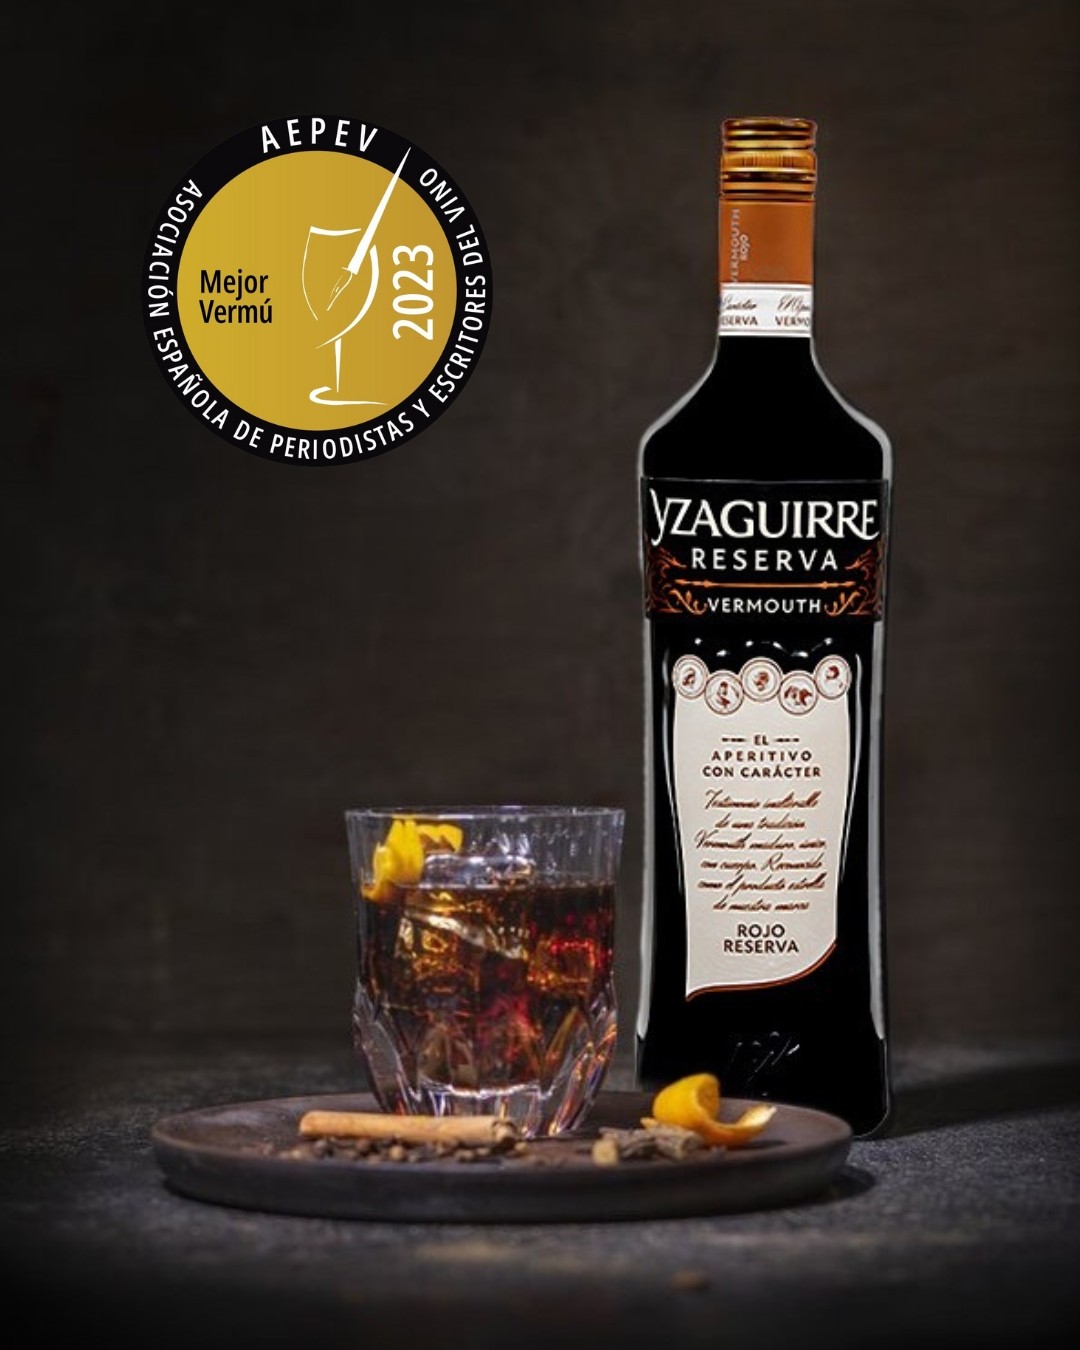 Conoce el Vermouth Yzaguirre Rojo Reserva, elegido mejor vermut de España Bodegas Yzaguirre